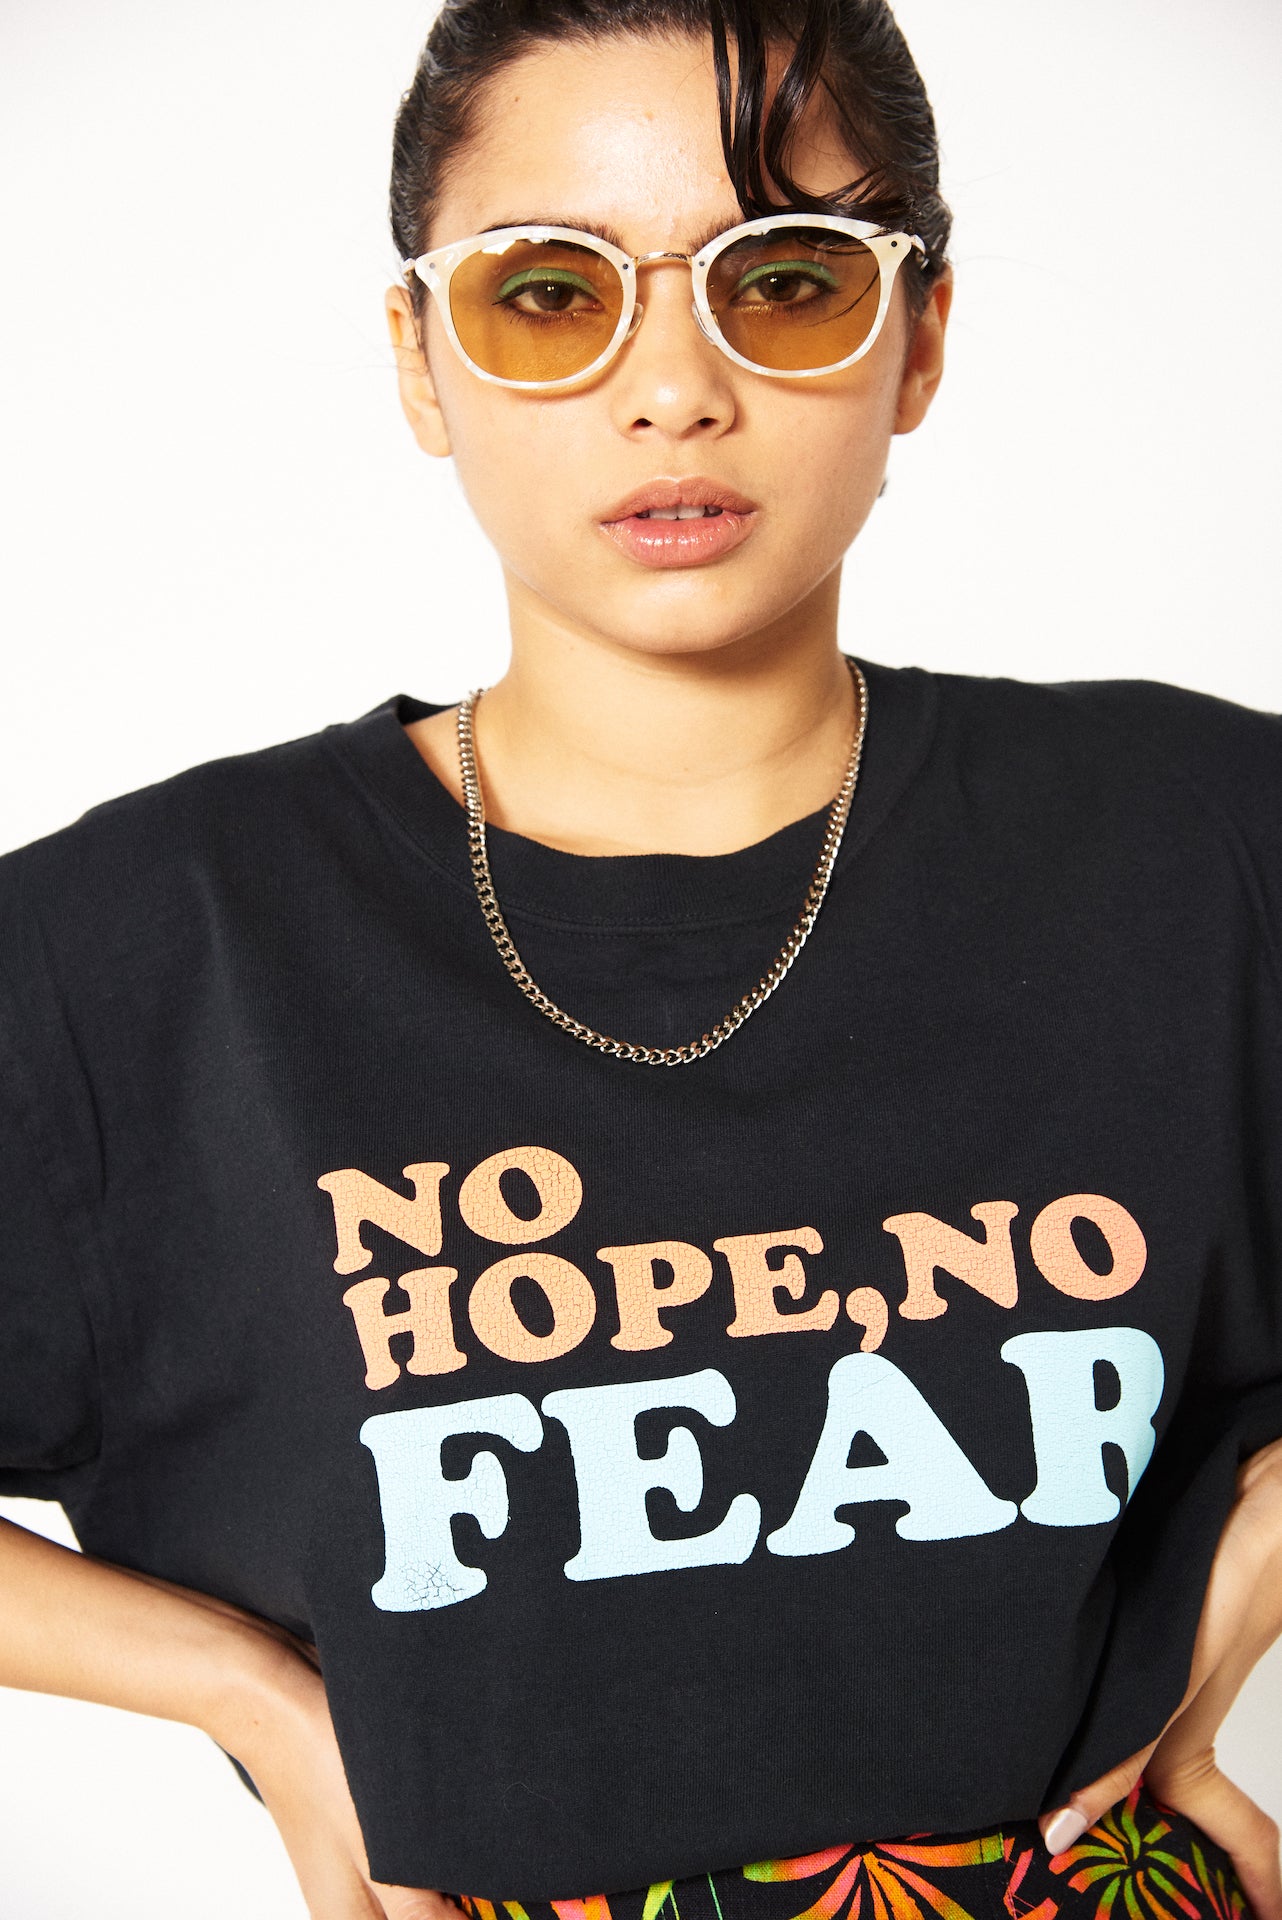 NO HOPE NO FEARビッグTシャツ(ブラック)